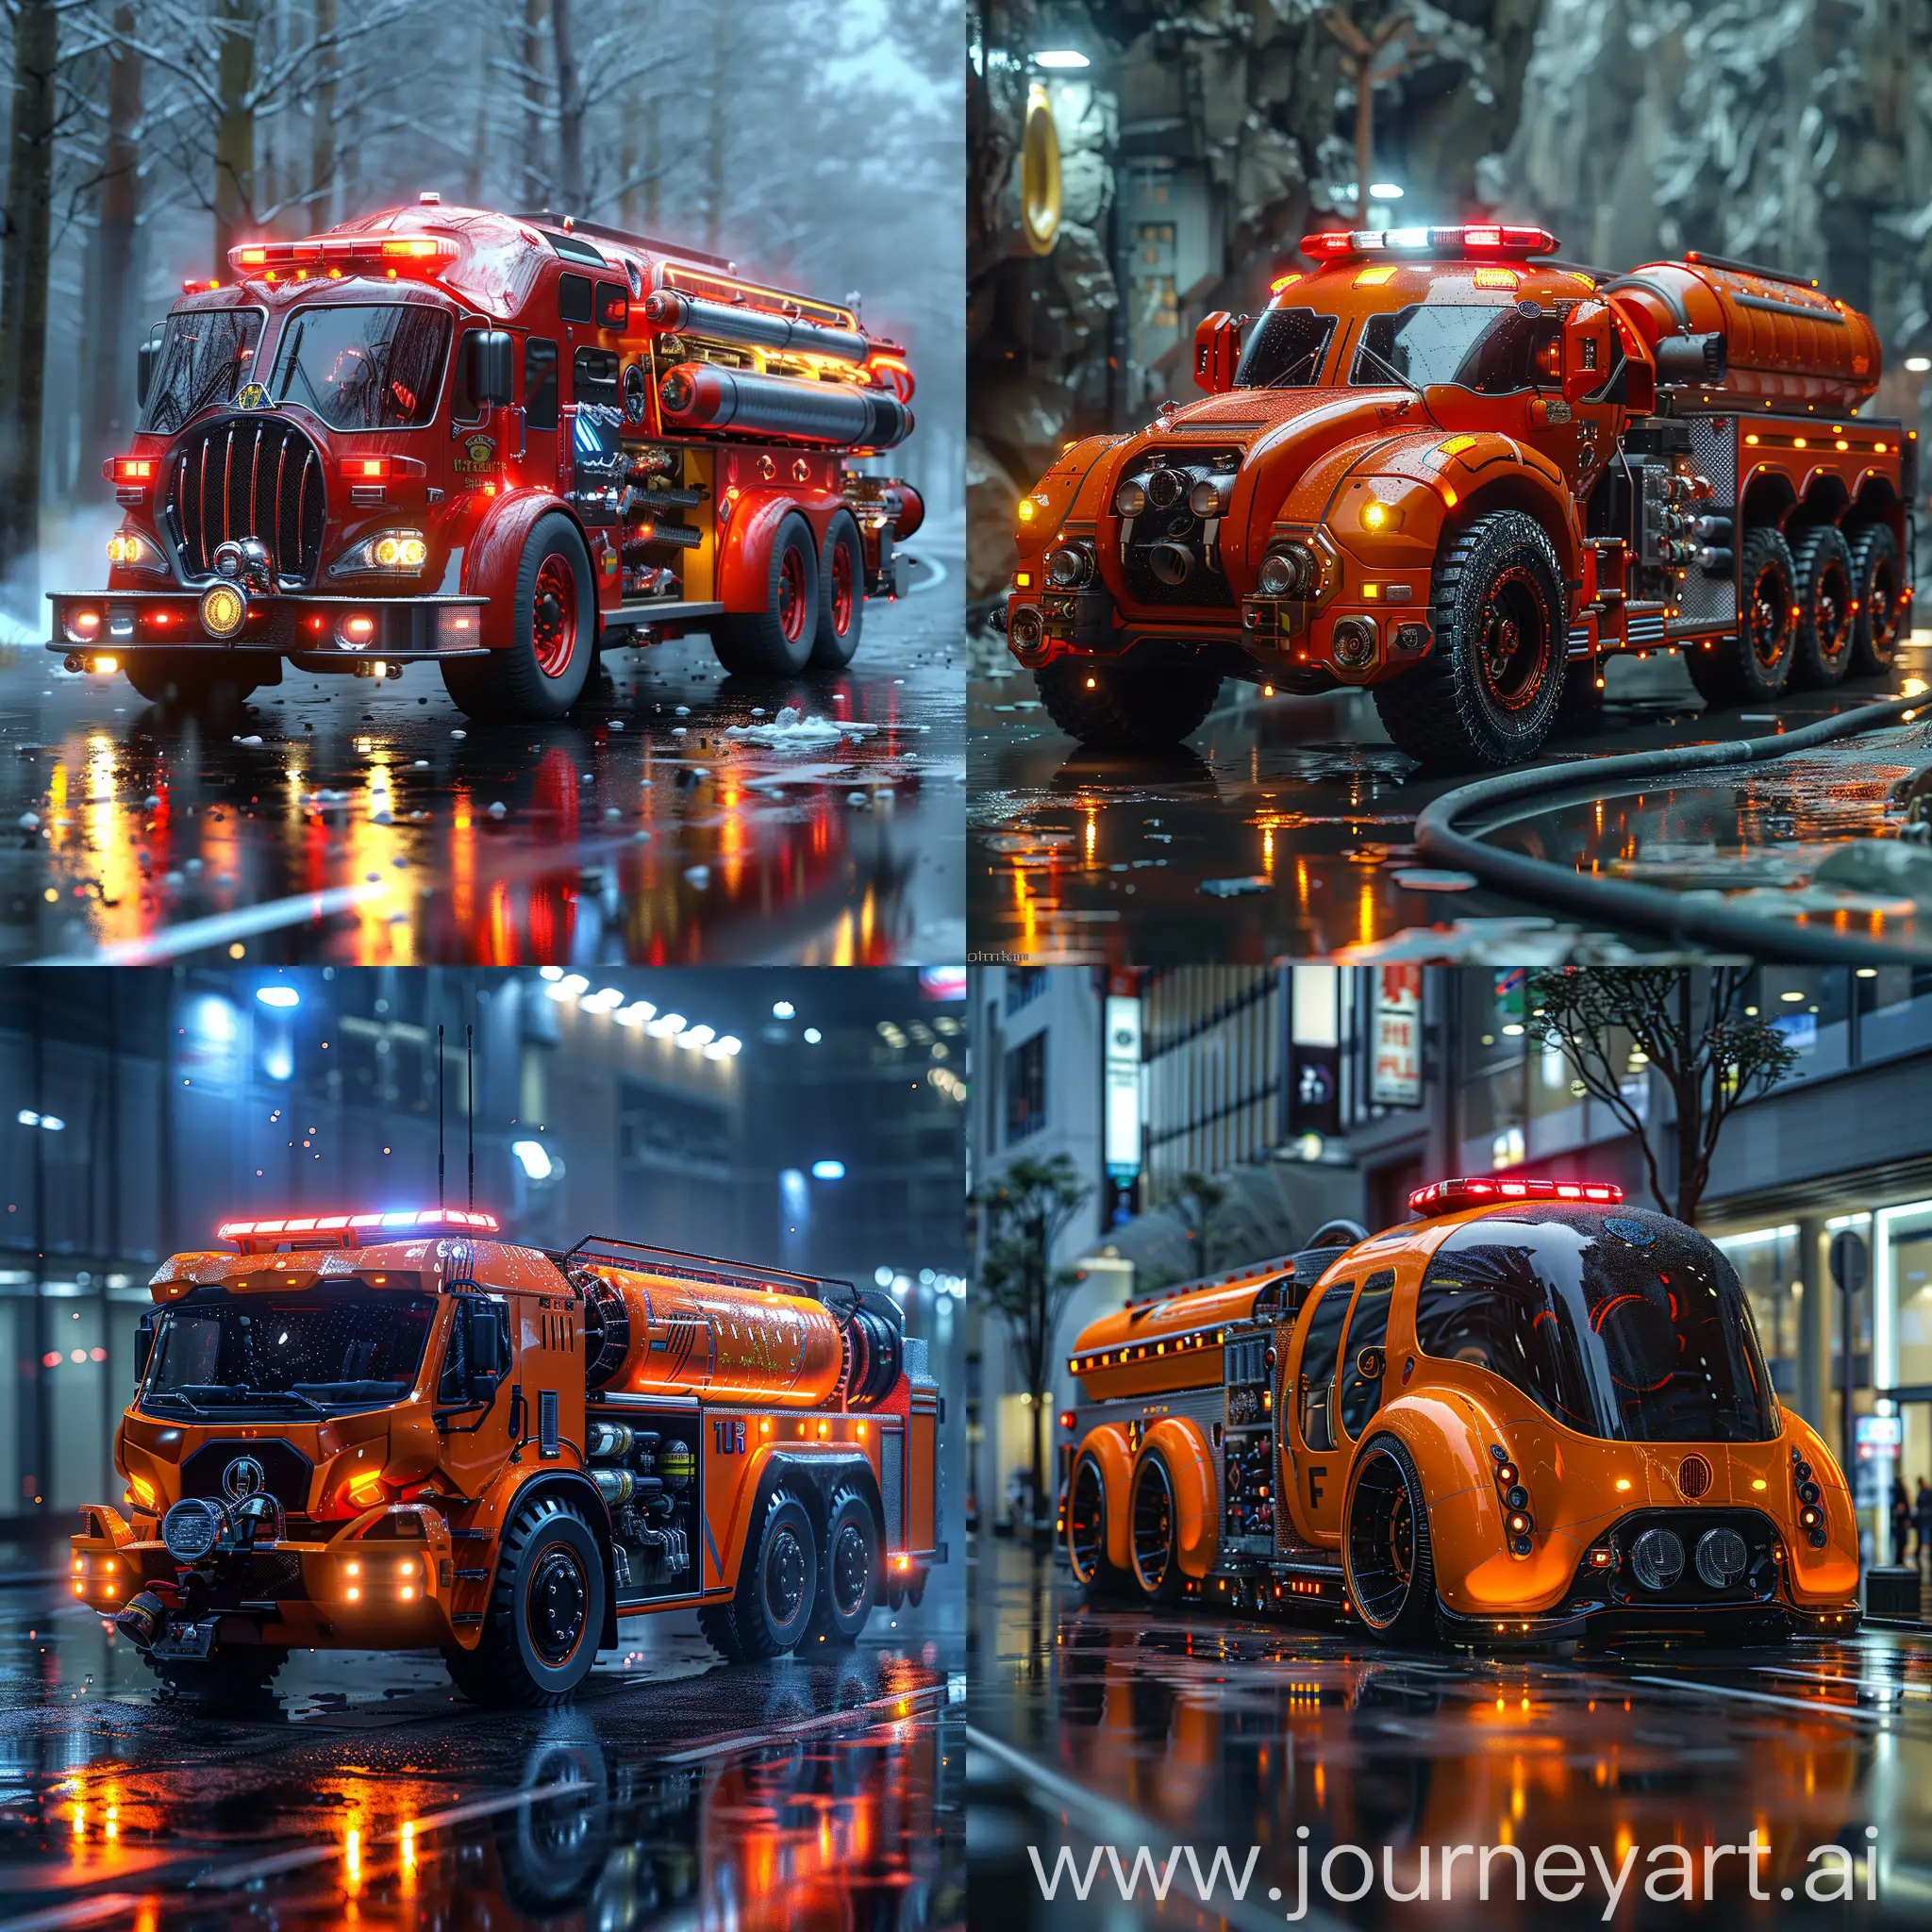 UltraModern-Futuristic-Fire-Truck-in-Streamlined-Style